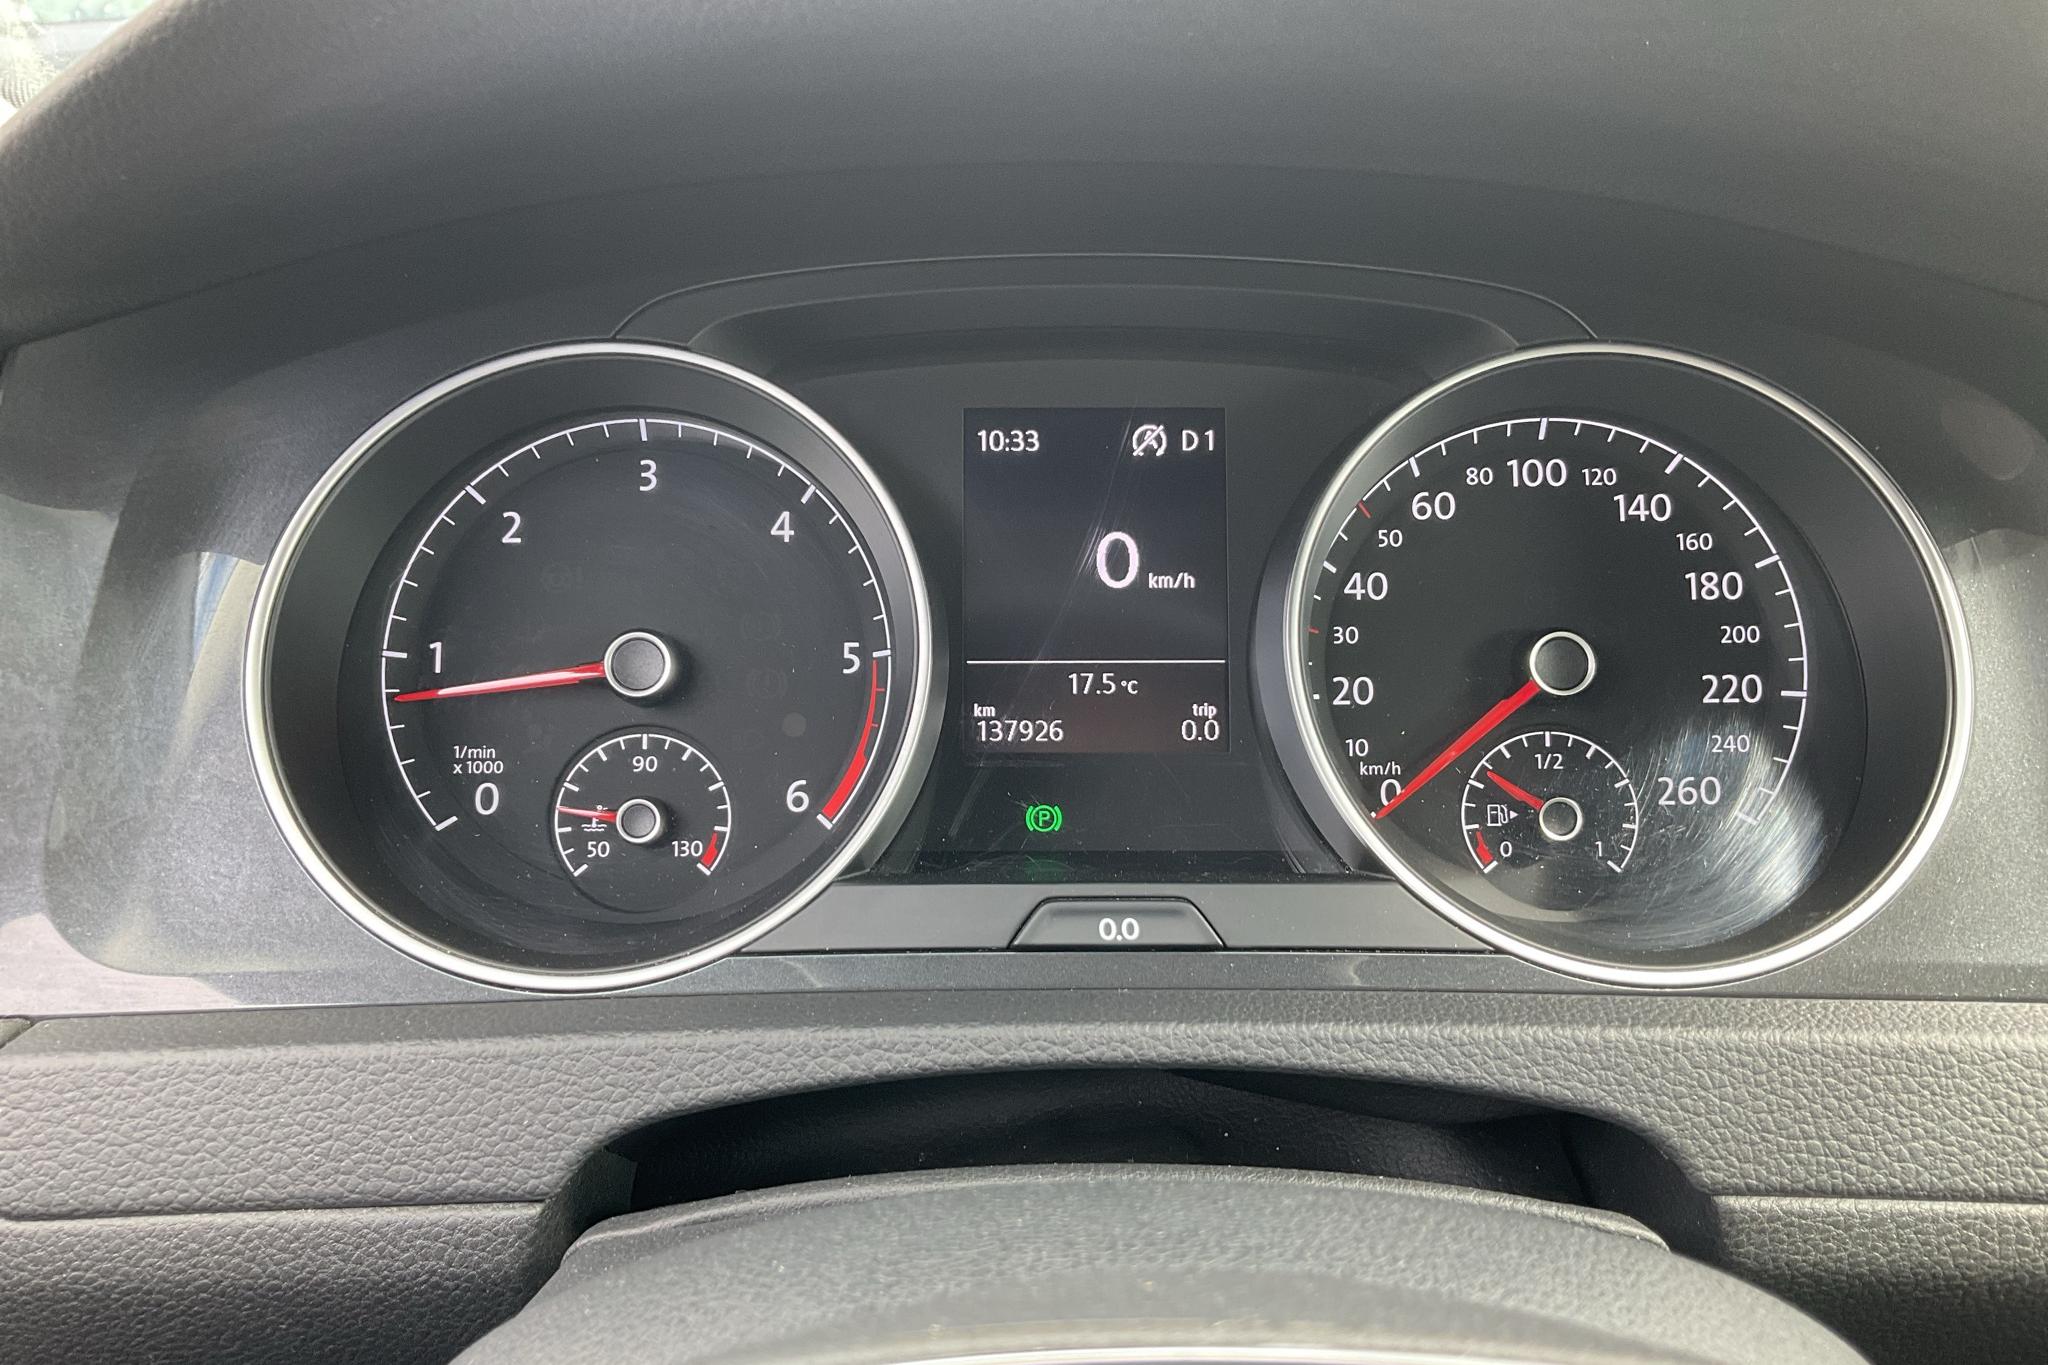 VW Golf VII 1.6 TDI Sportscombi (115hk) - 137 930 km - Automatyczna - biały - 2019